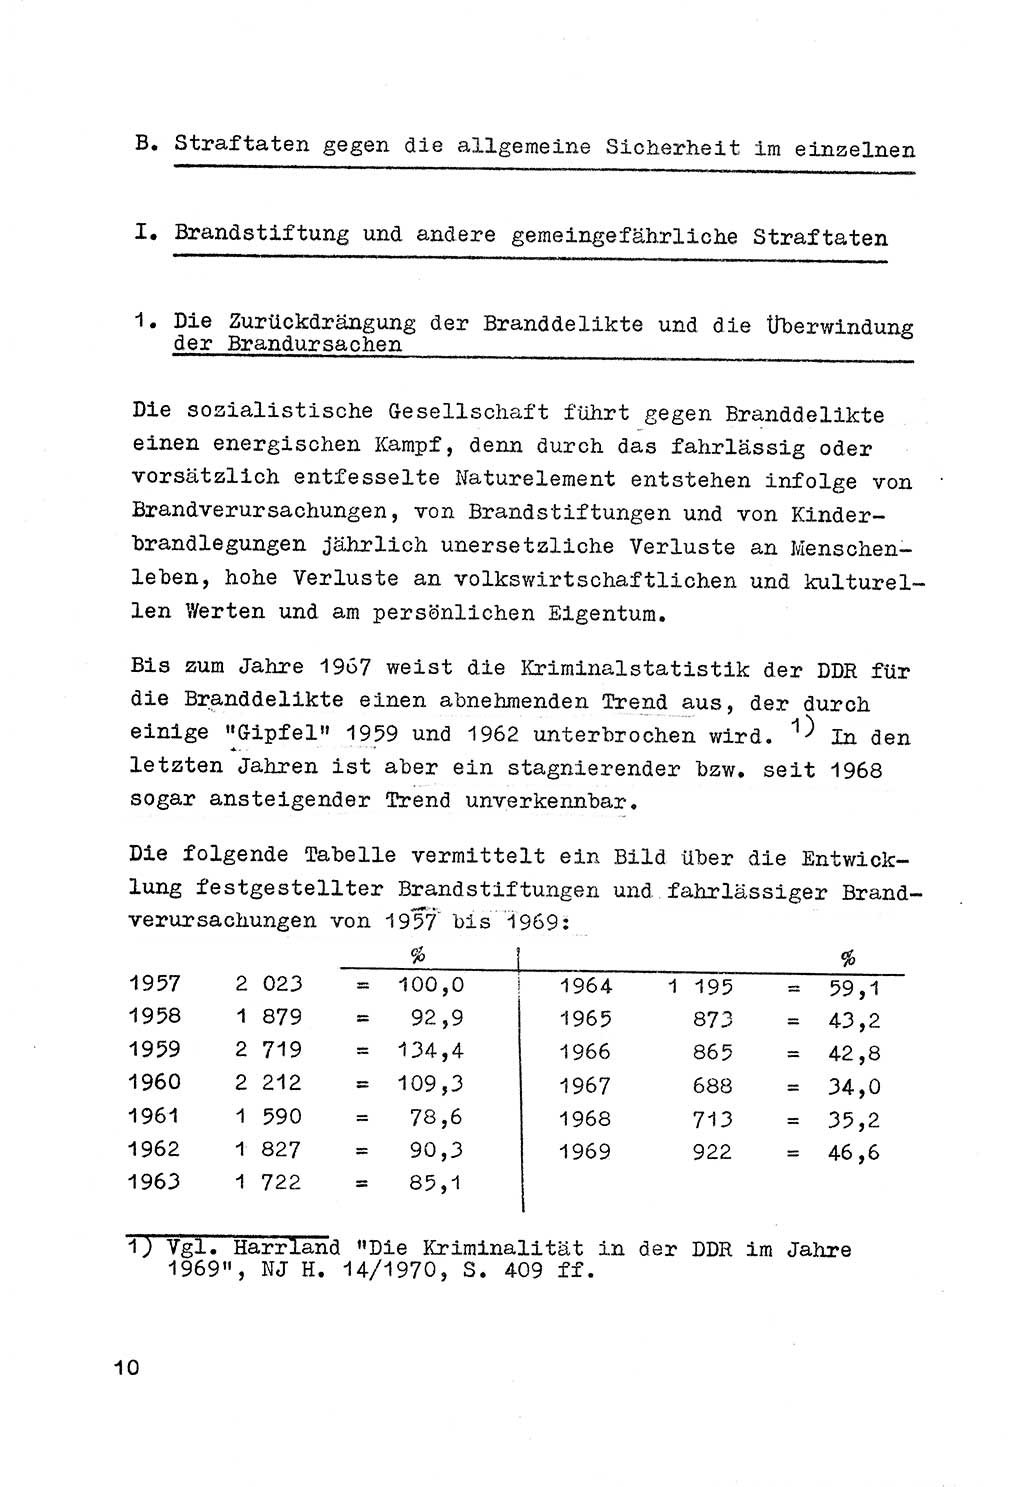 Strafrecht der DDR (Deutsche Demokratische Republik), Besonderer Teil, Lehrmaterial, Heft 7 1970, Seite 10 (Strafr. DDR BT Lehrmat. H. 7 1970, S. 10)